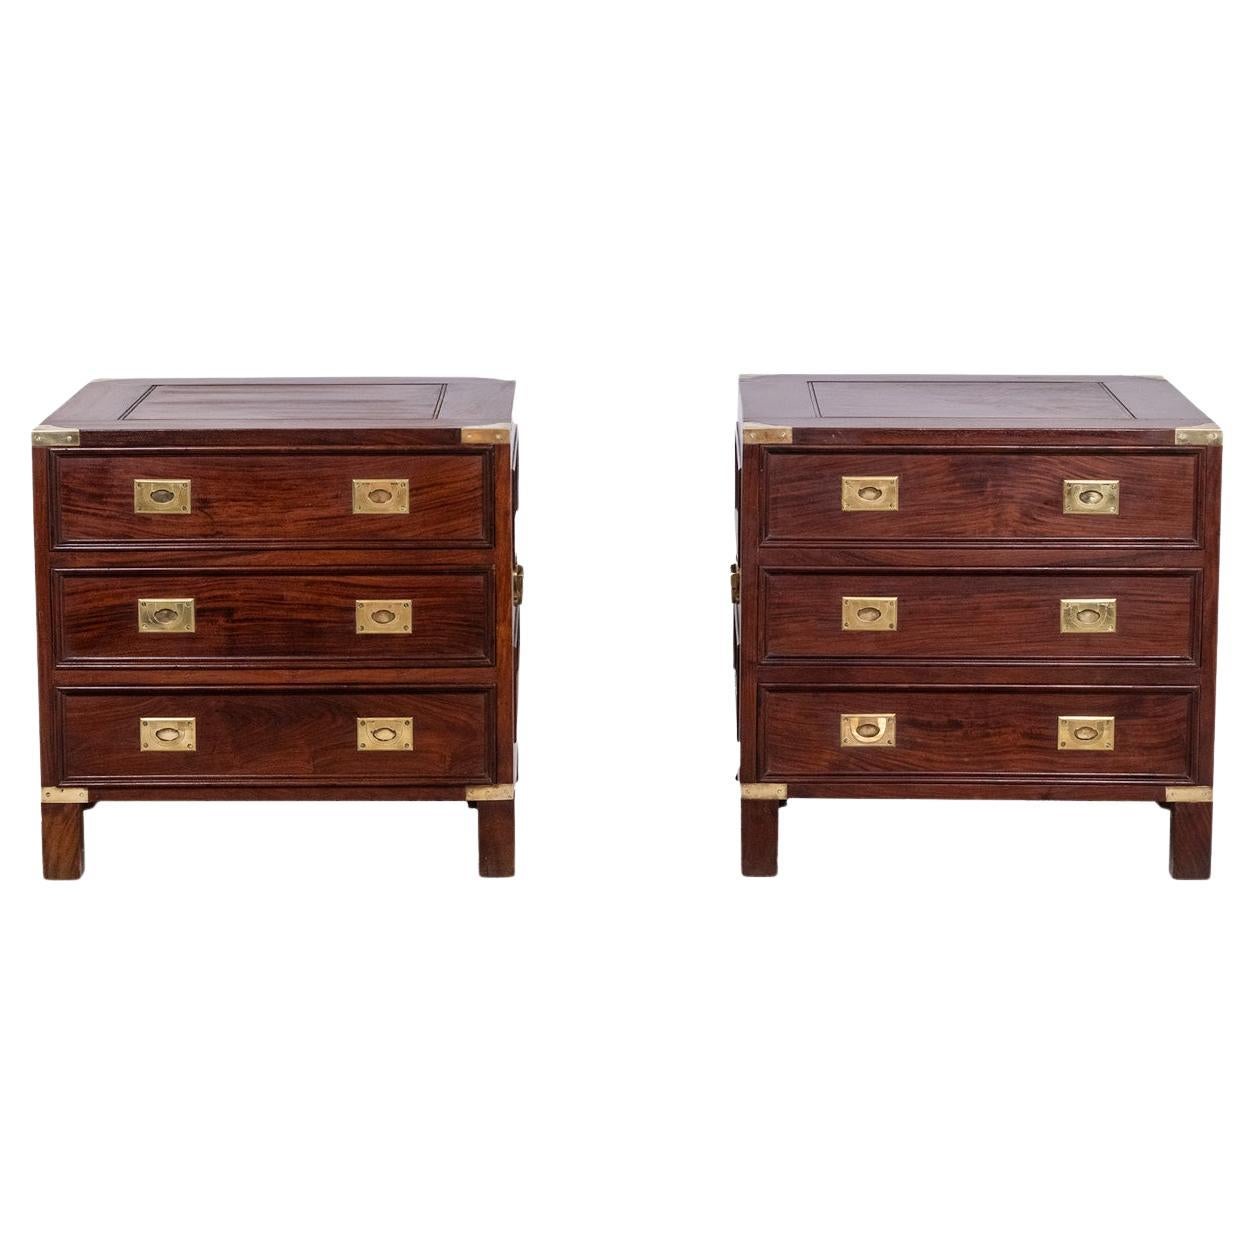 Pair of mahogany marine chests of drawers. 1950s.